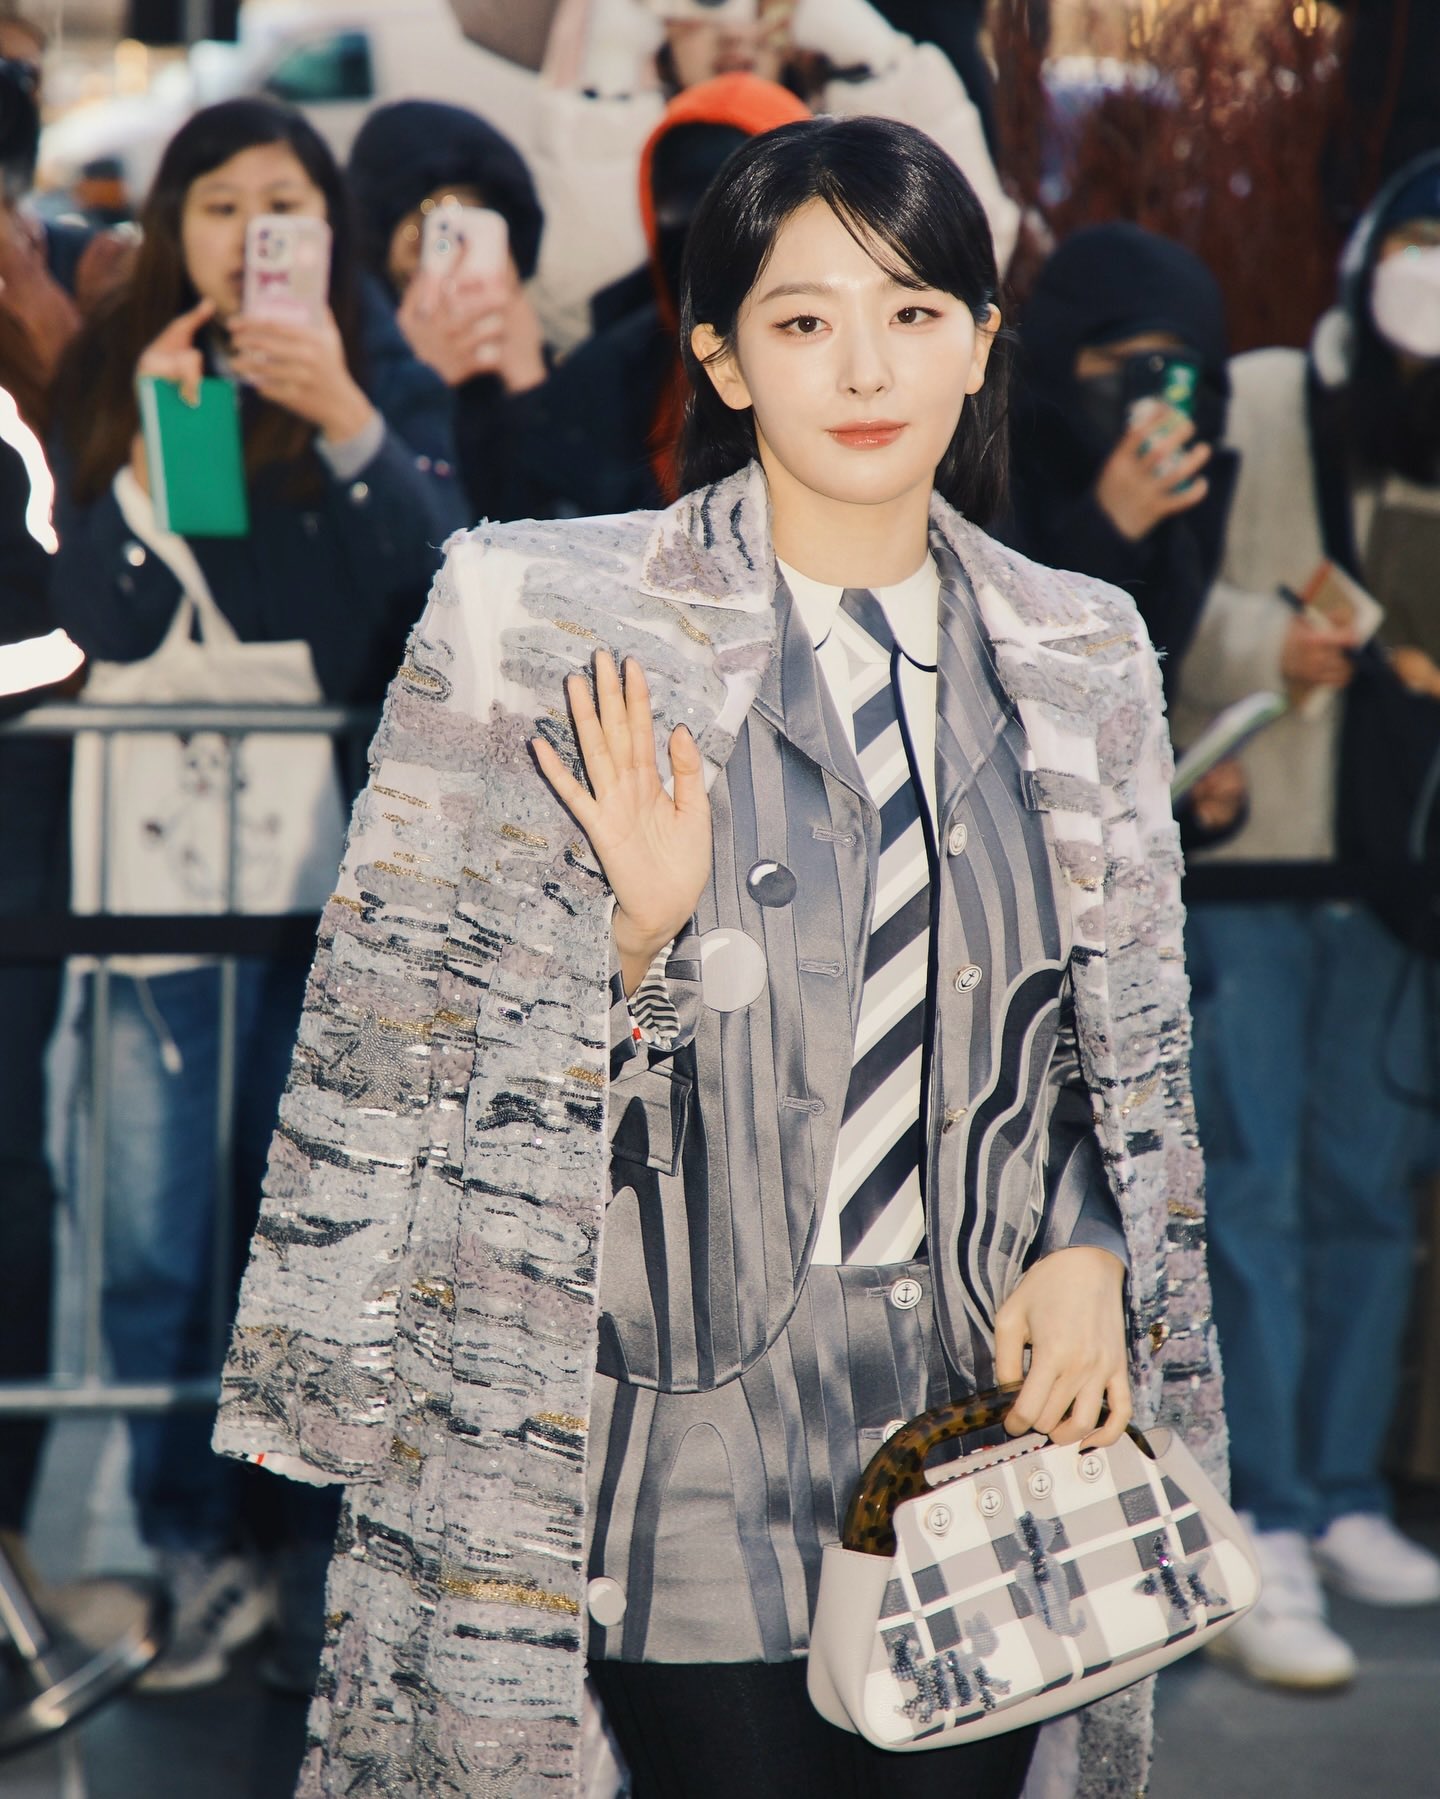 뉴욕 패션위크 톰브라운 패션쇼 참석한 레드벨벳 슬기